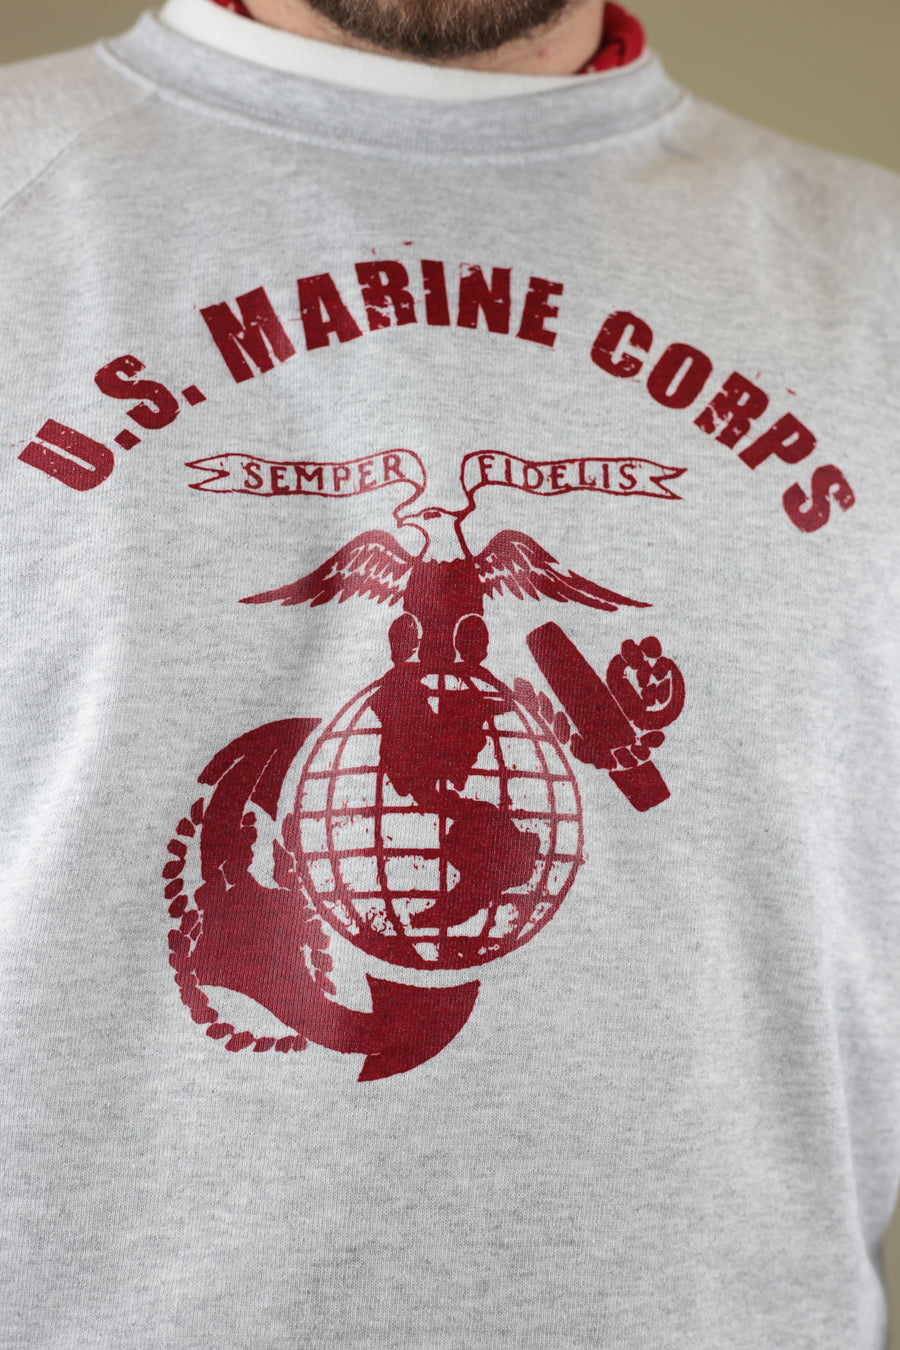 Us Marines Corps raglan sweatshirt